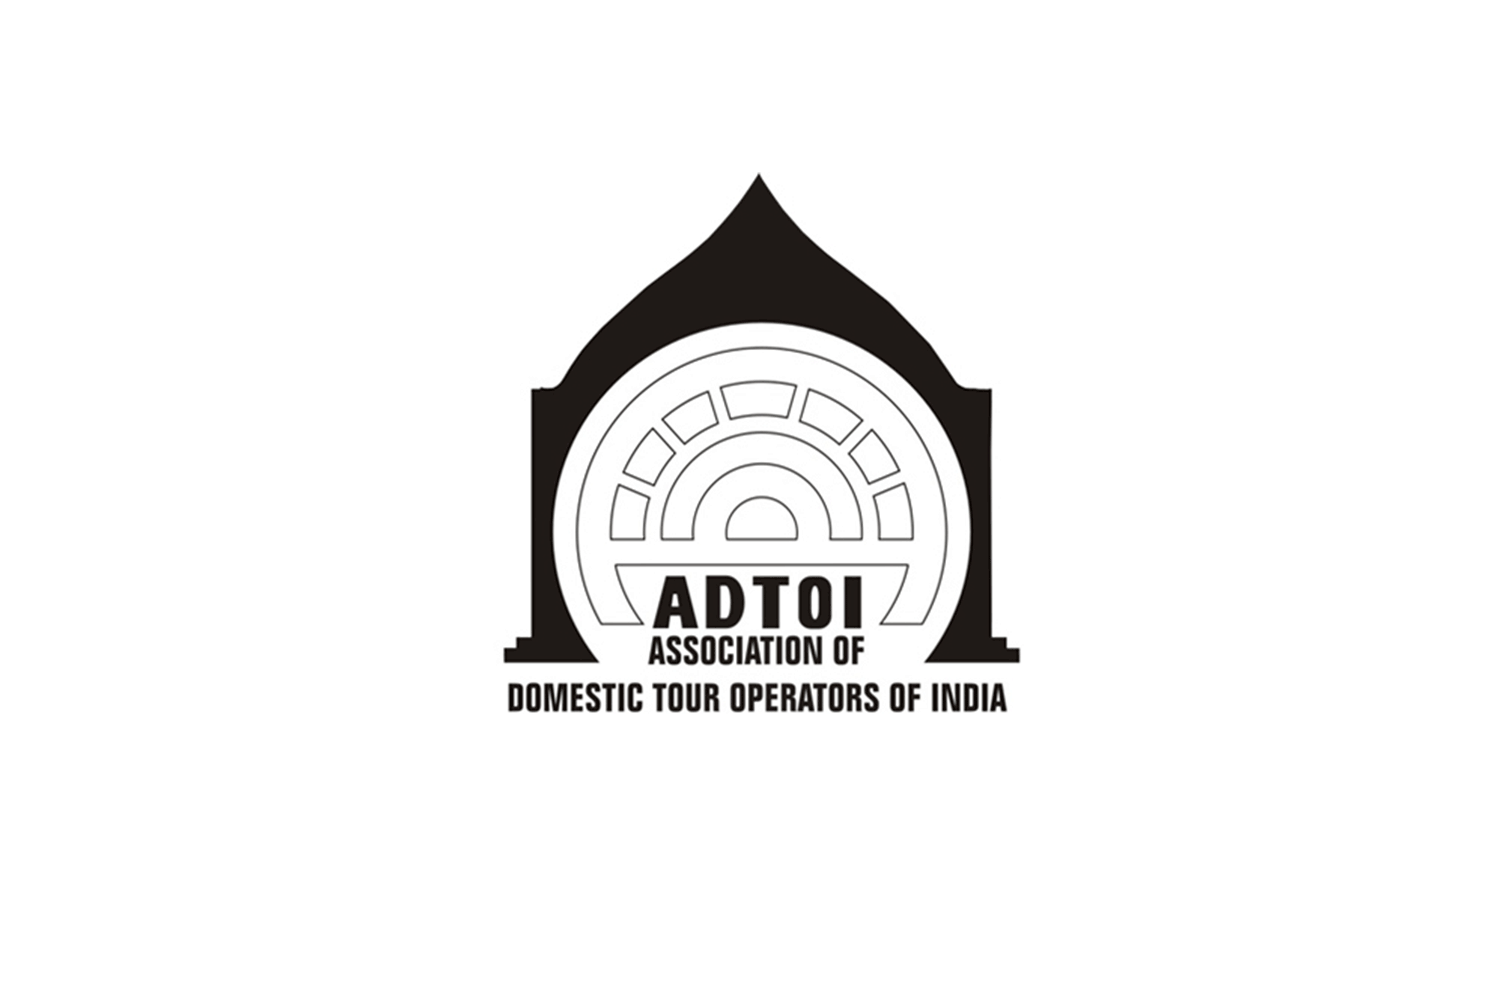                  adtoi_logo          